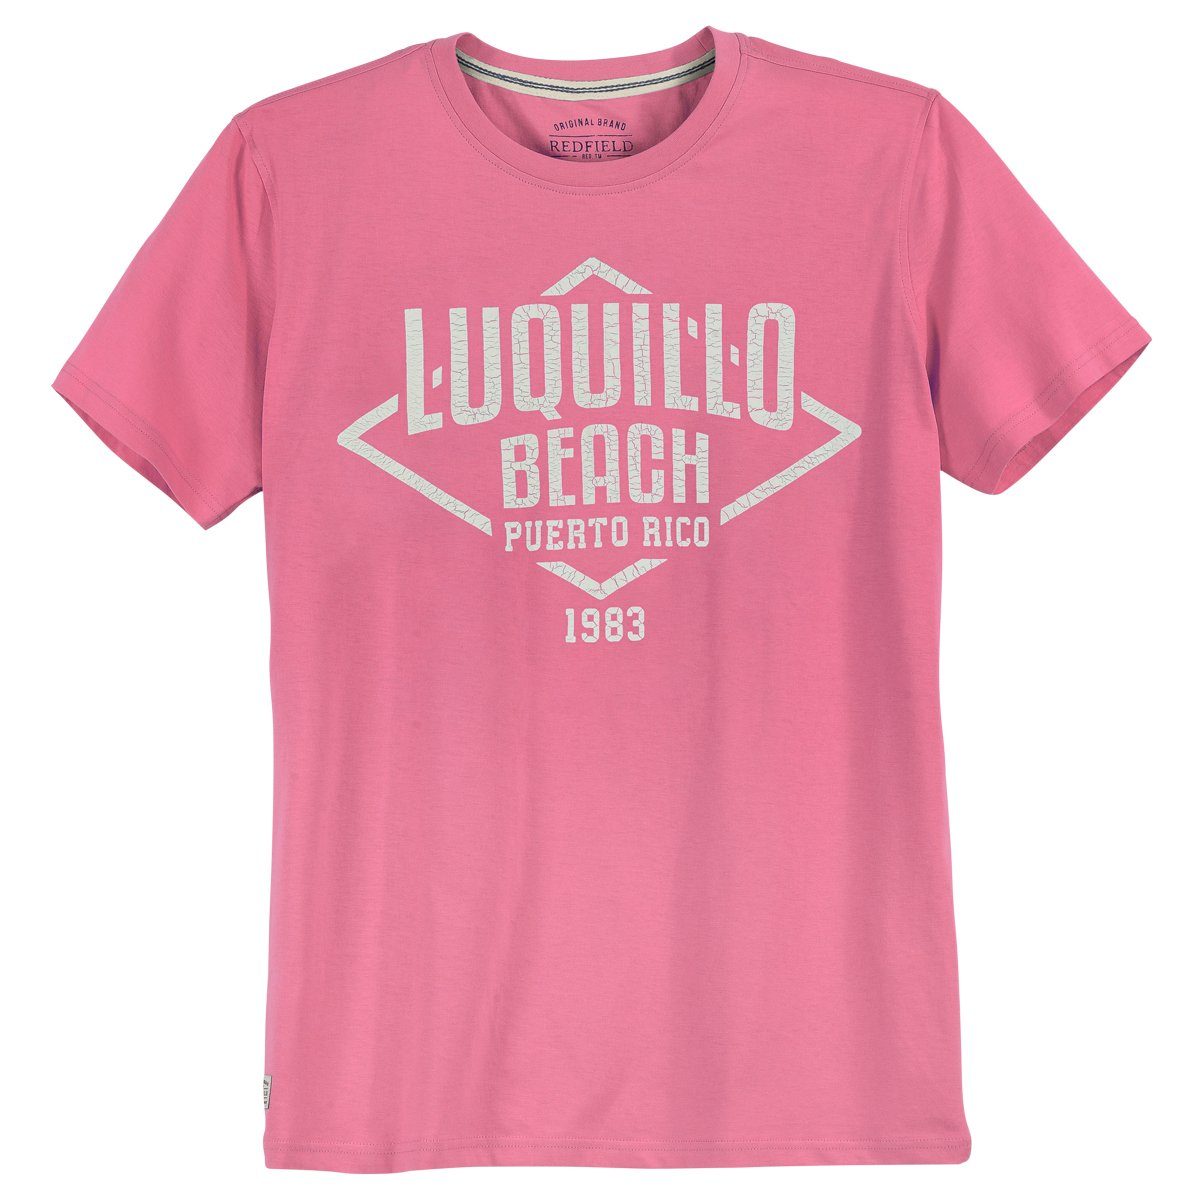 Redfield Luquillo Print T-Shirt pink Beach redfield Größen Große Rundhalsshirt